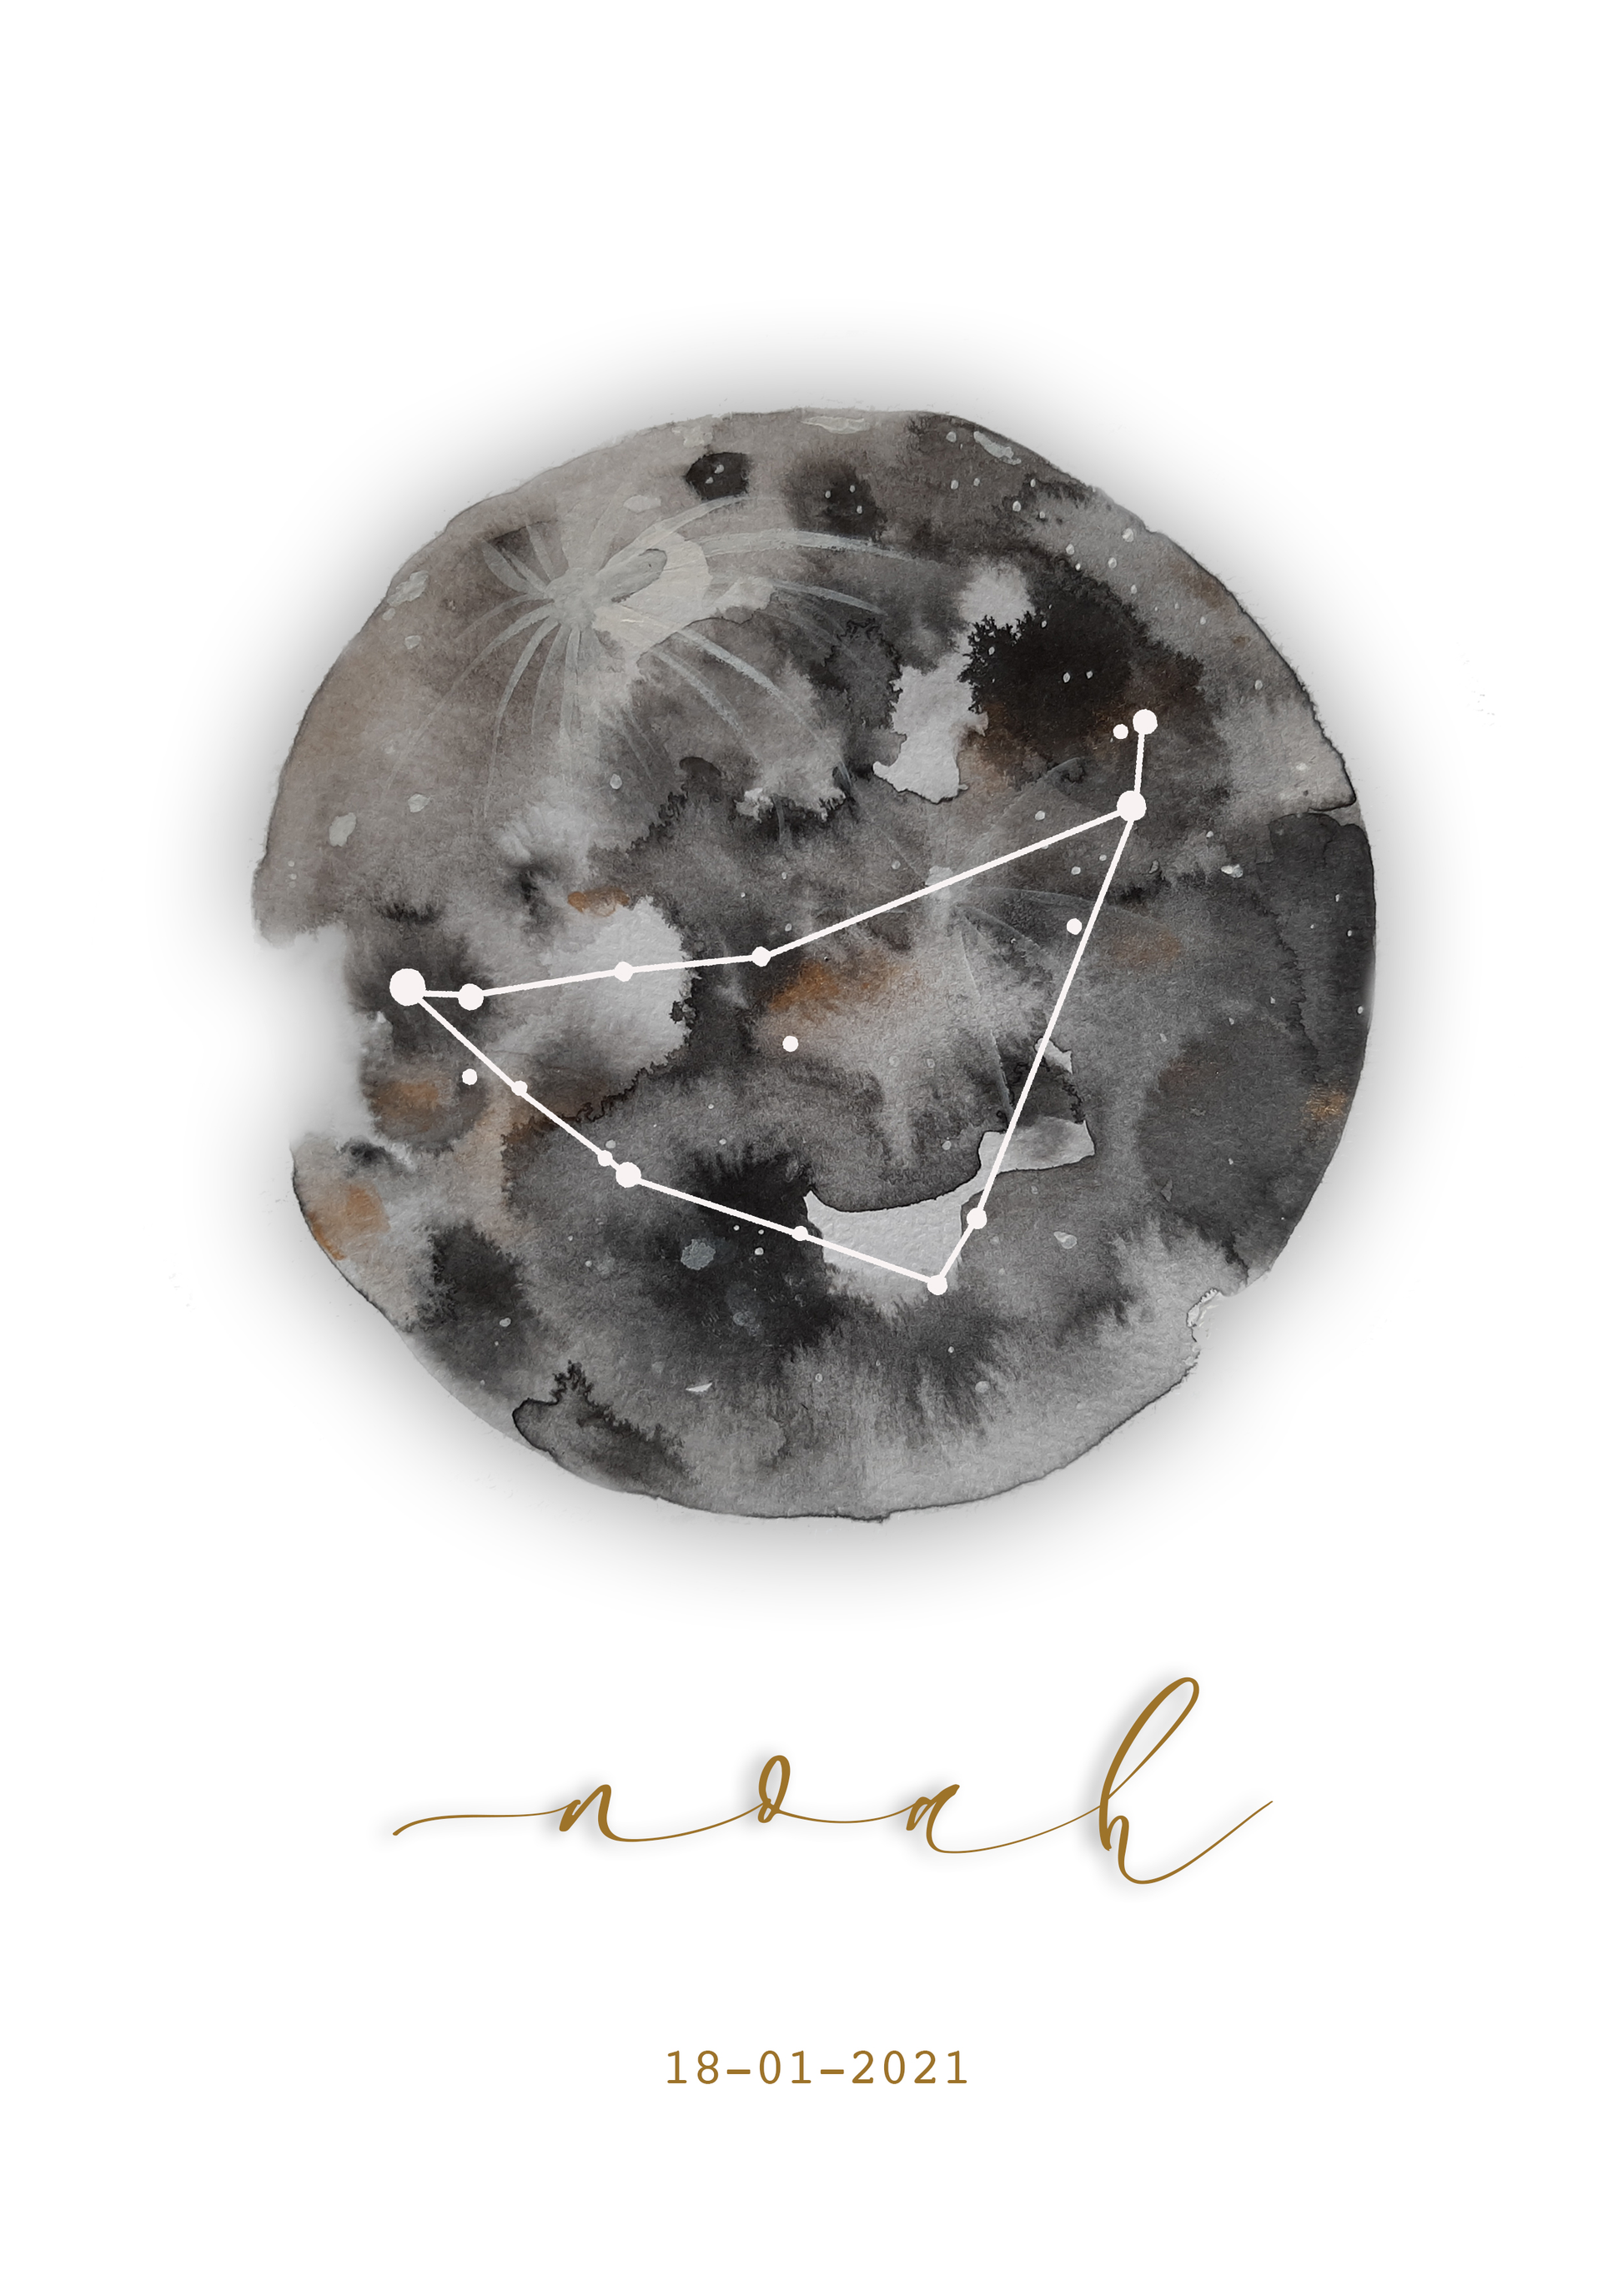 Les lunes astro La p'tite Ourse sont créées à partir d'une aquarelle numérique.